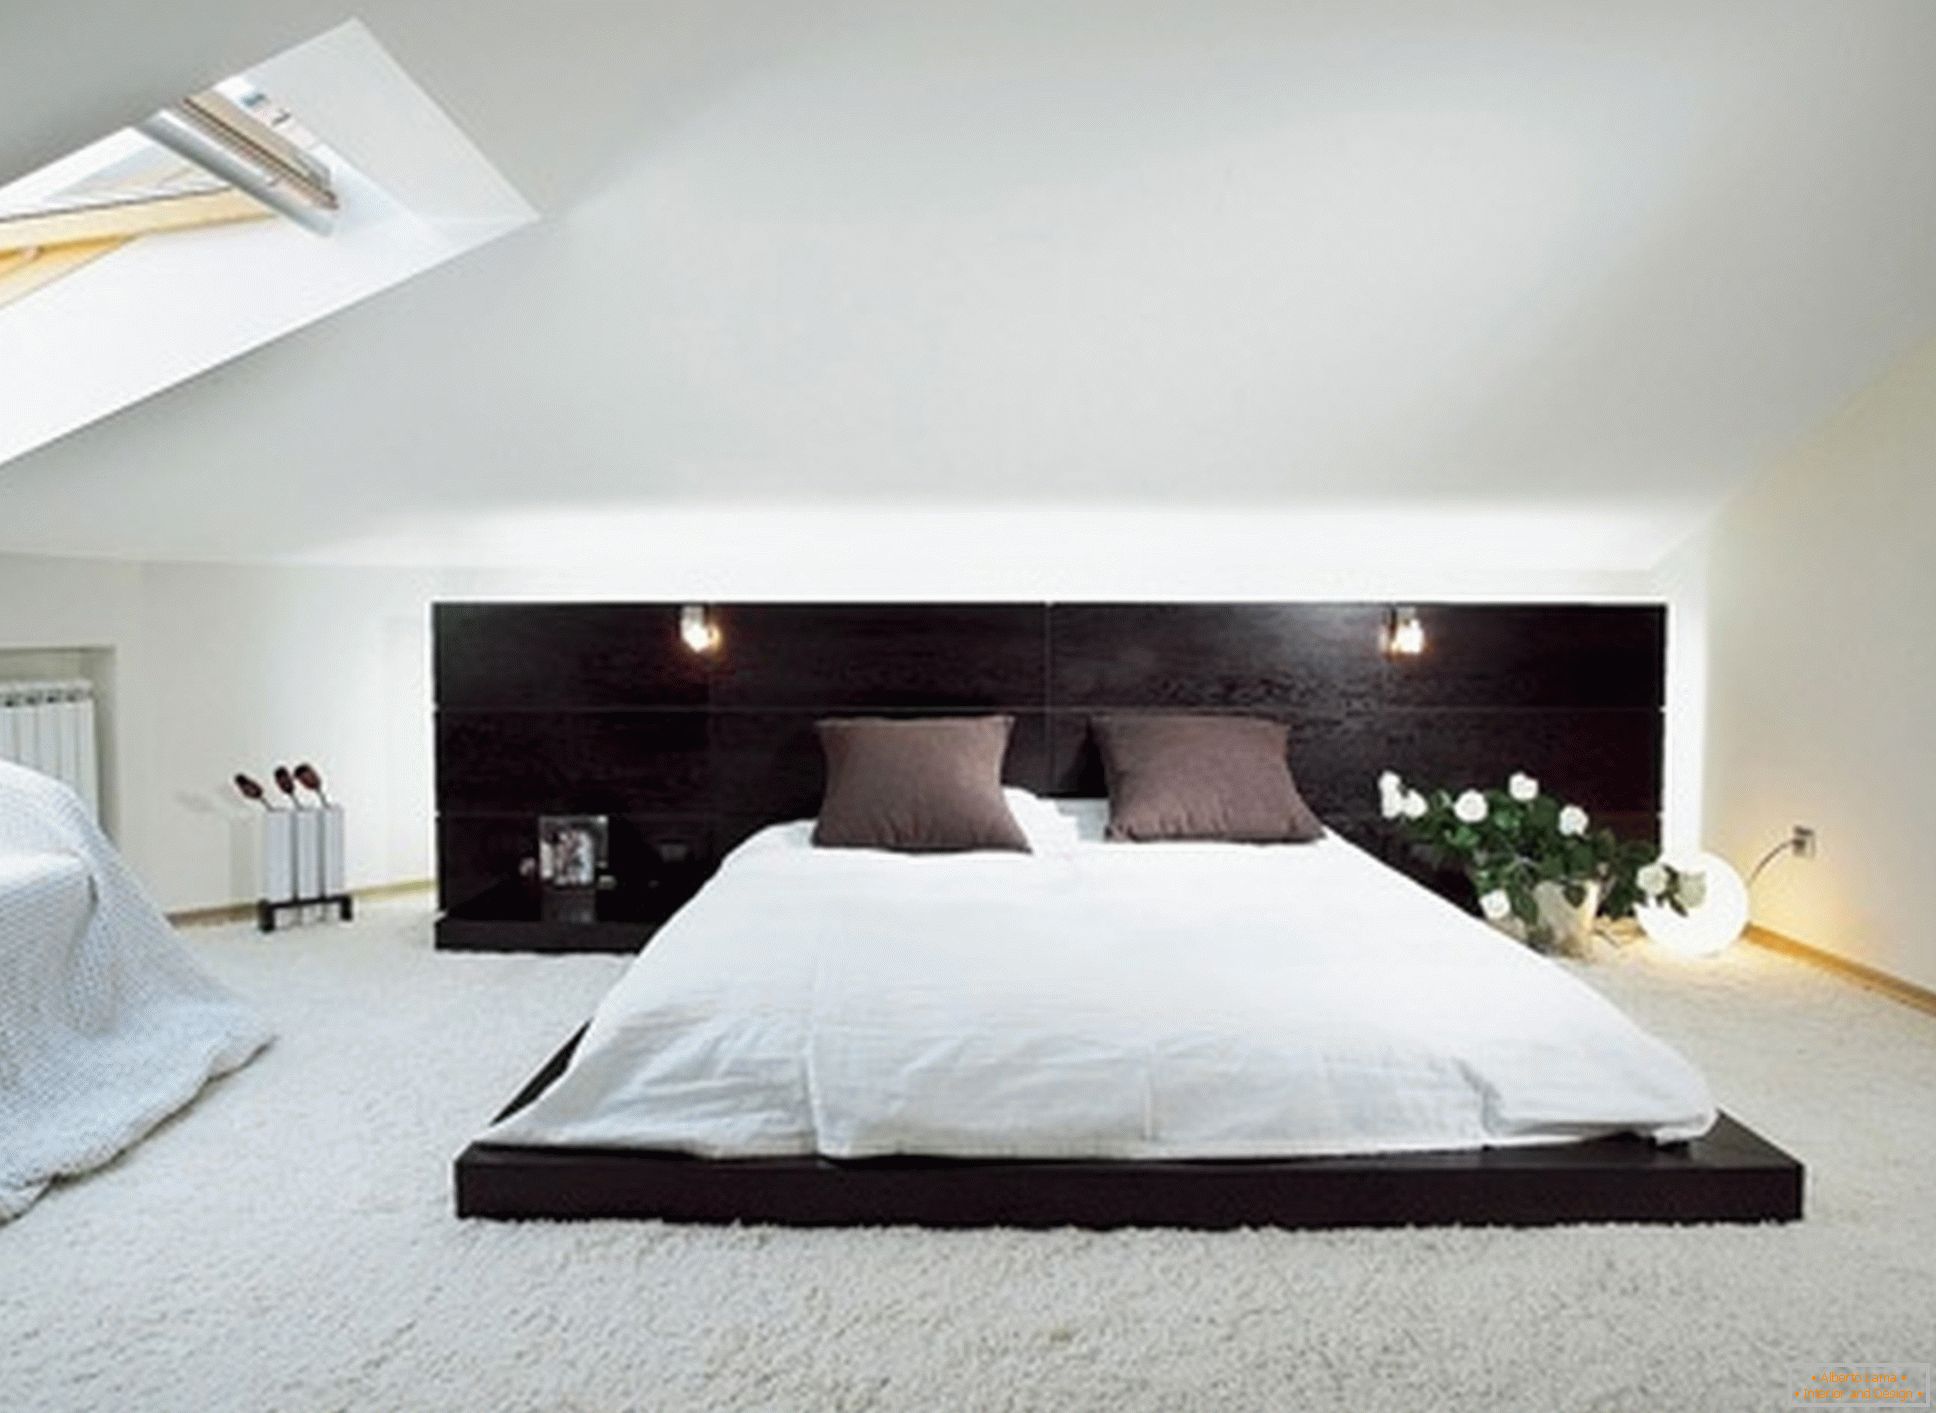 Луксузна спална соба во стилот на минимализмот - пример за успешен дизајн на мала соба на подот на сведување.